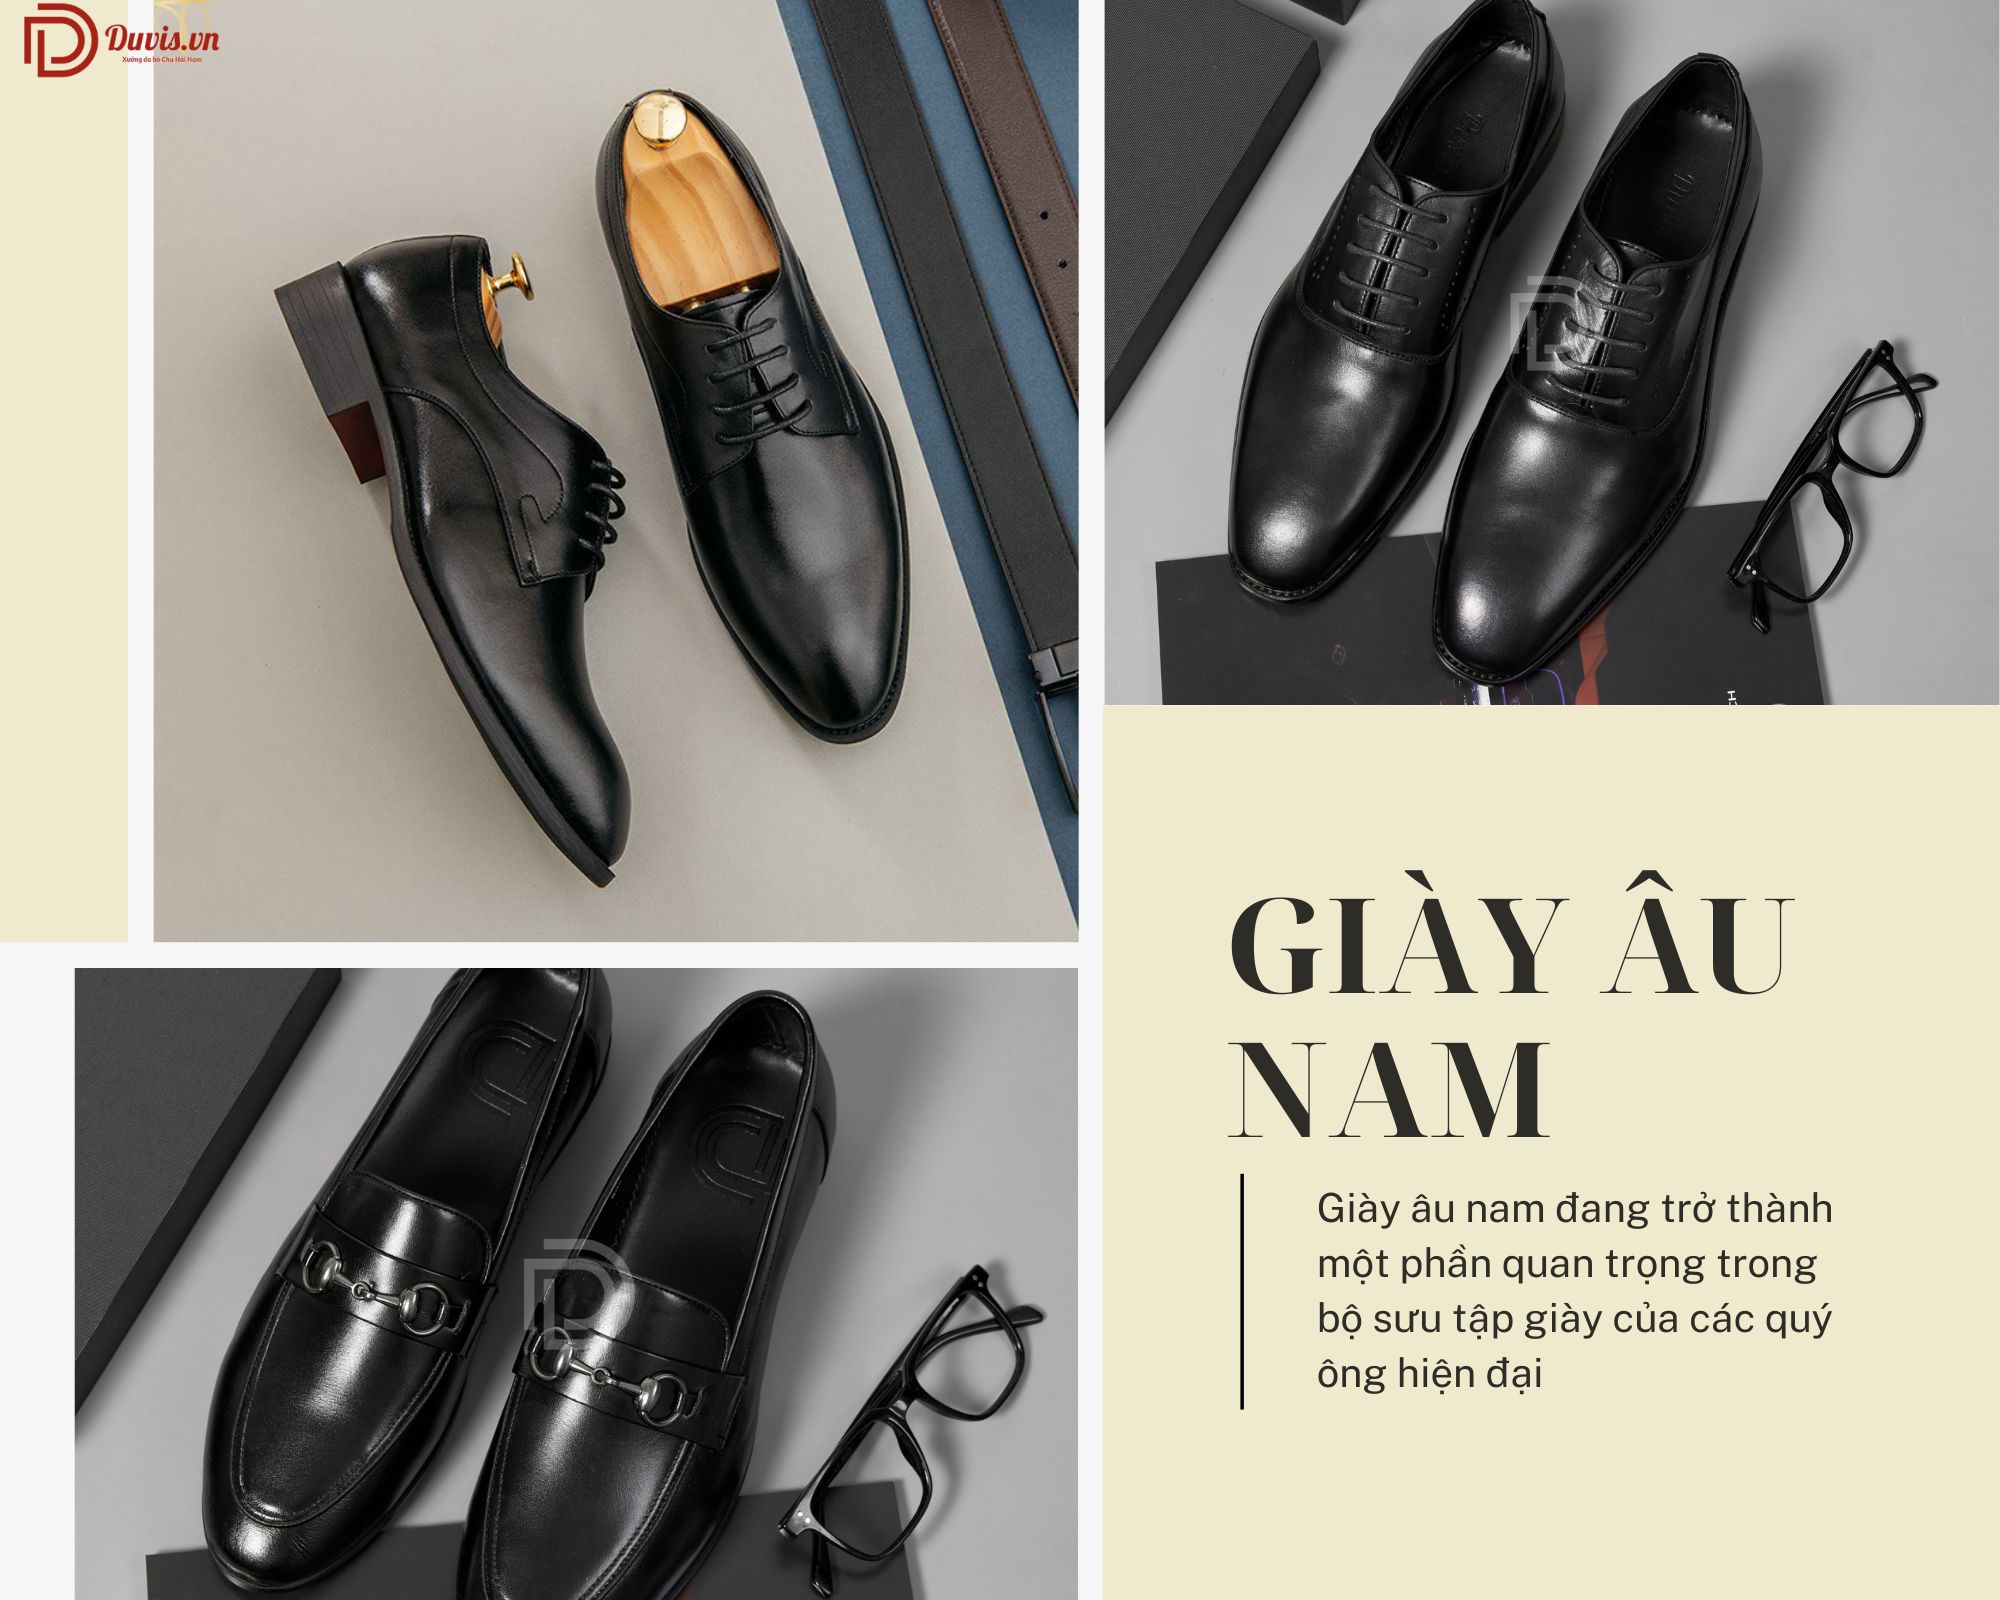 Giày âu nam là thuật ngữ chỉ những loại giày dành cho nam giới được sản xuất theo kiểu dáng và phong cách của châu Âu